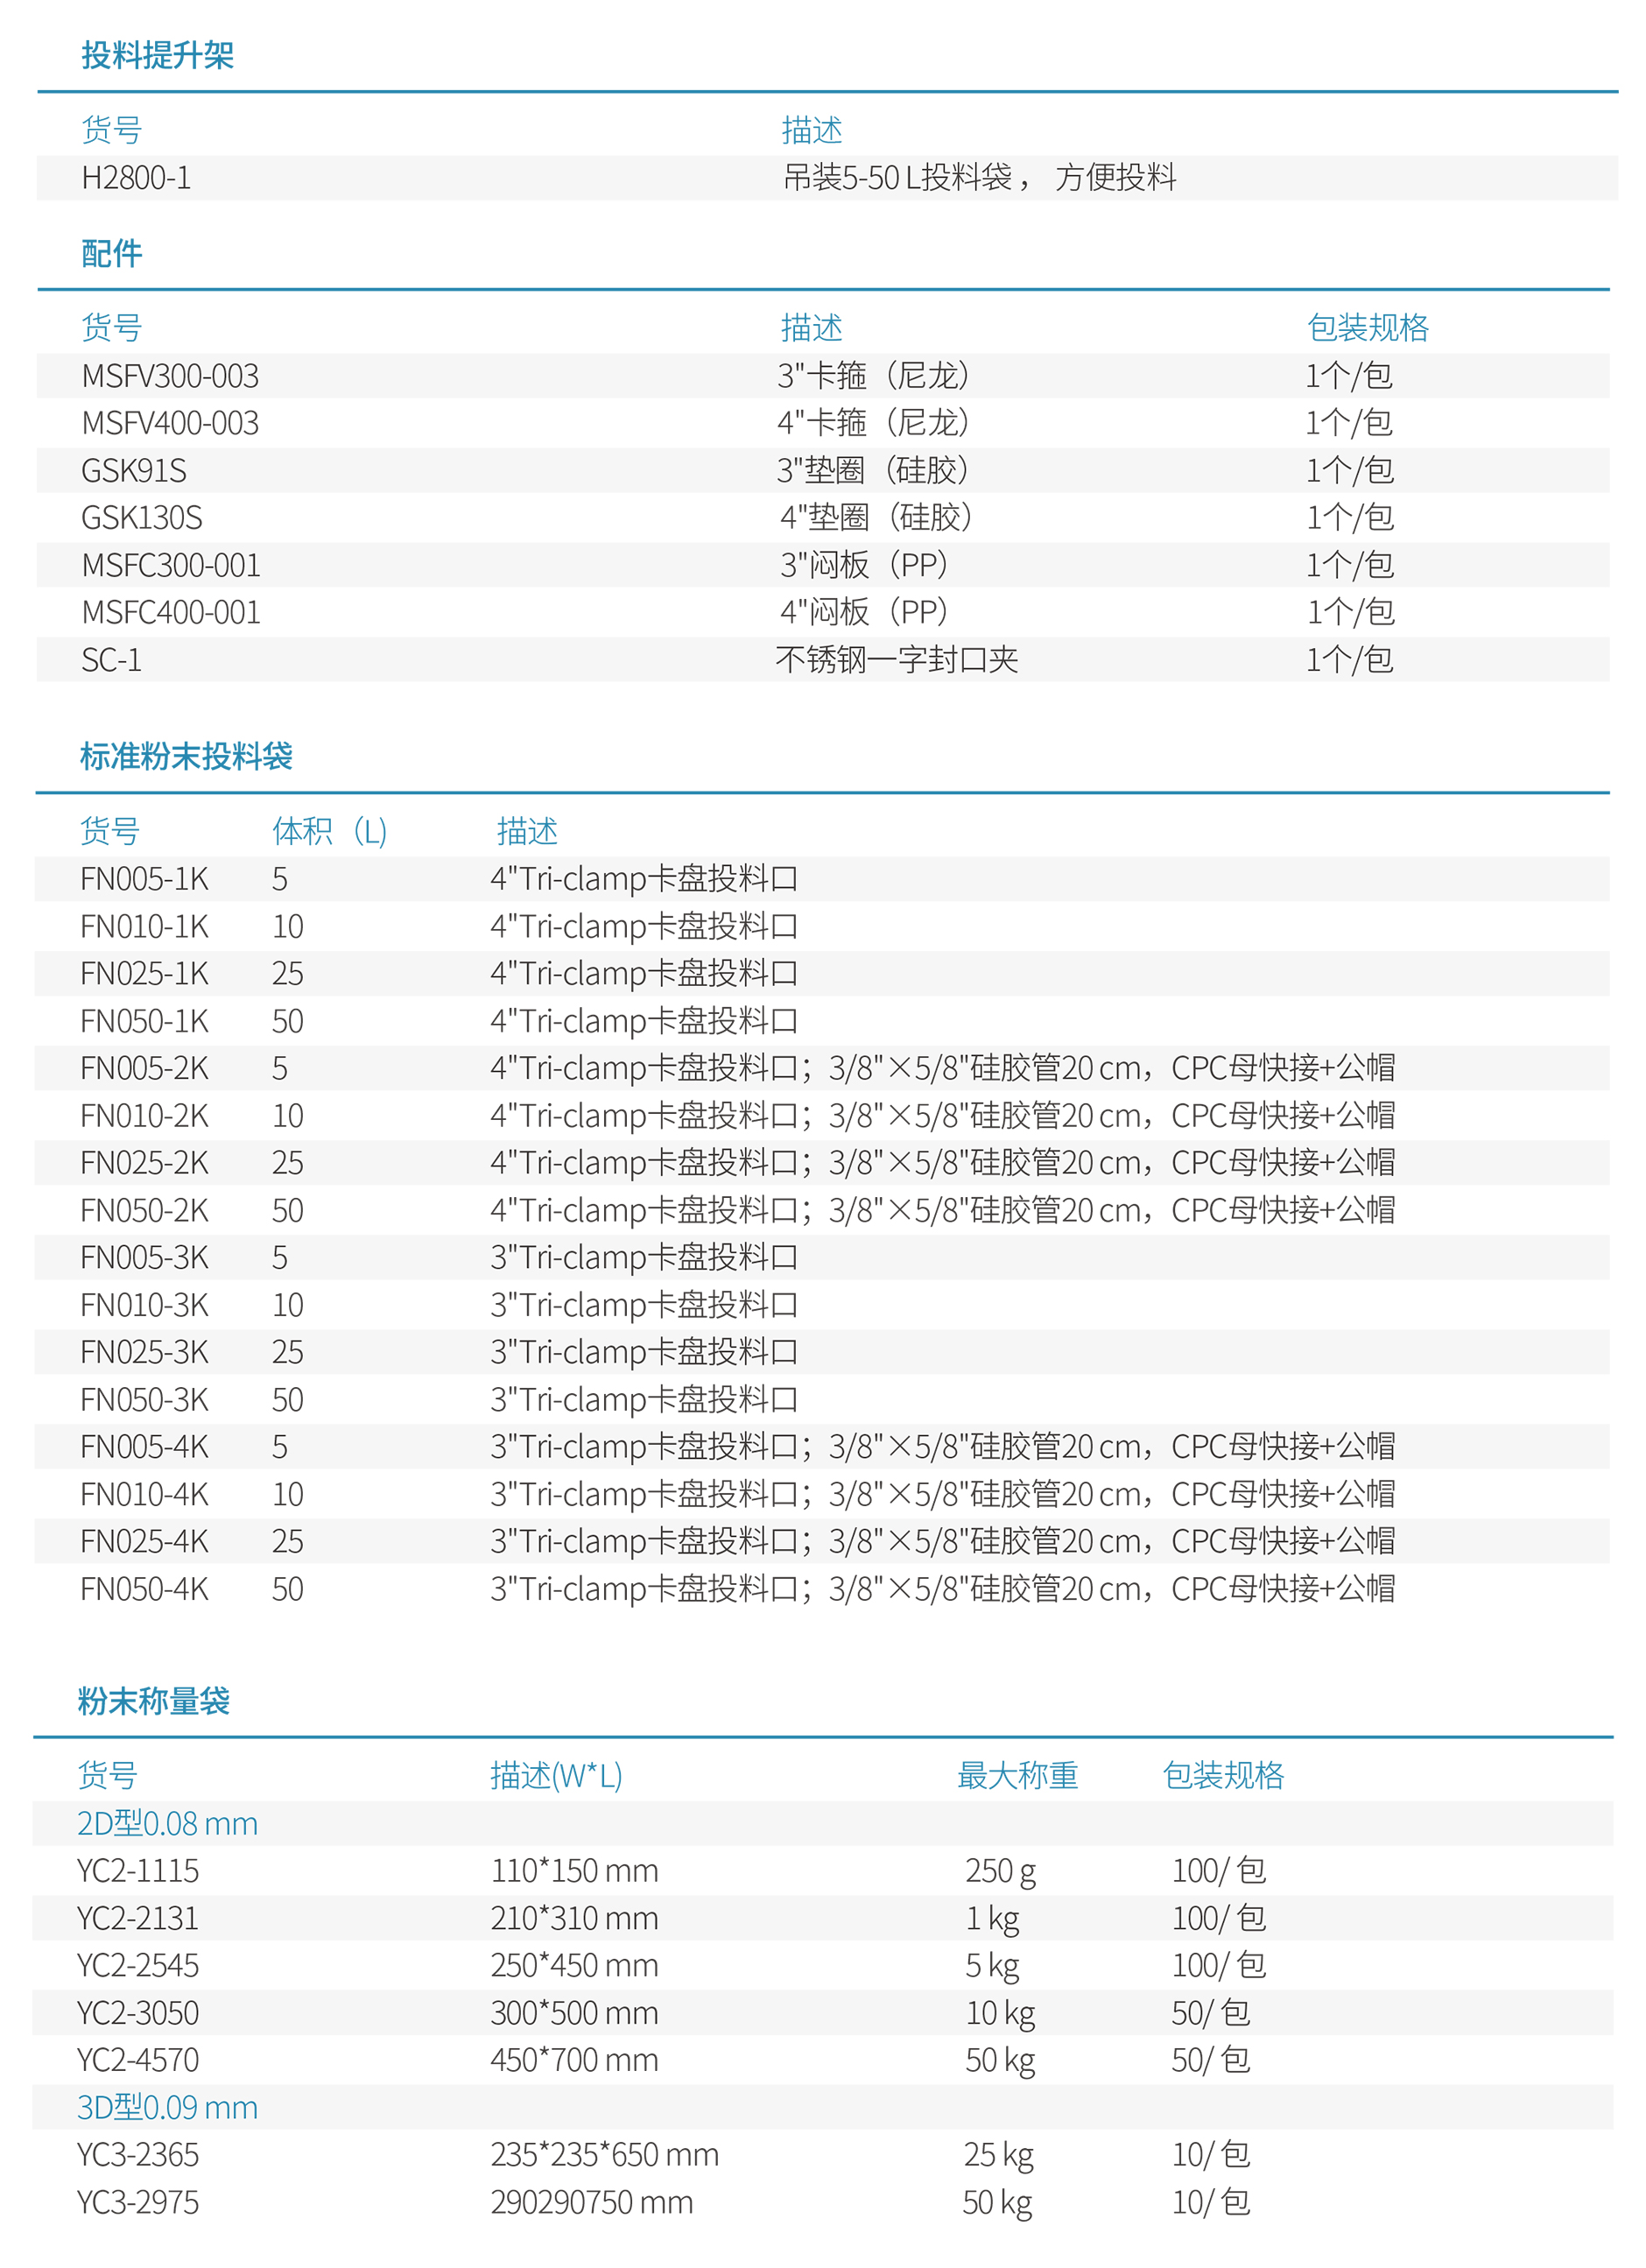 02-【已上线】Data-CN-固体粉末投料系统-20220718-3.jpg